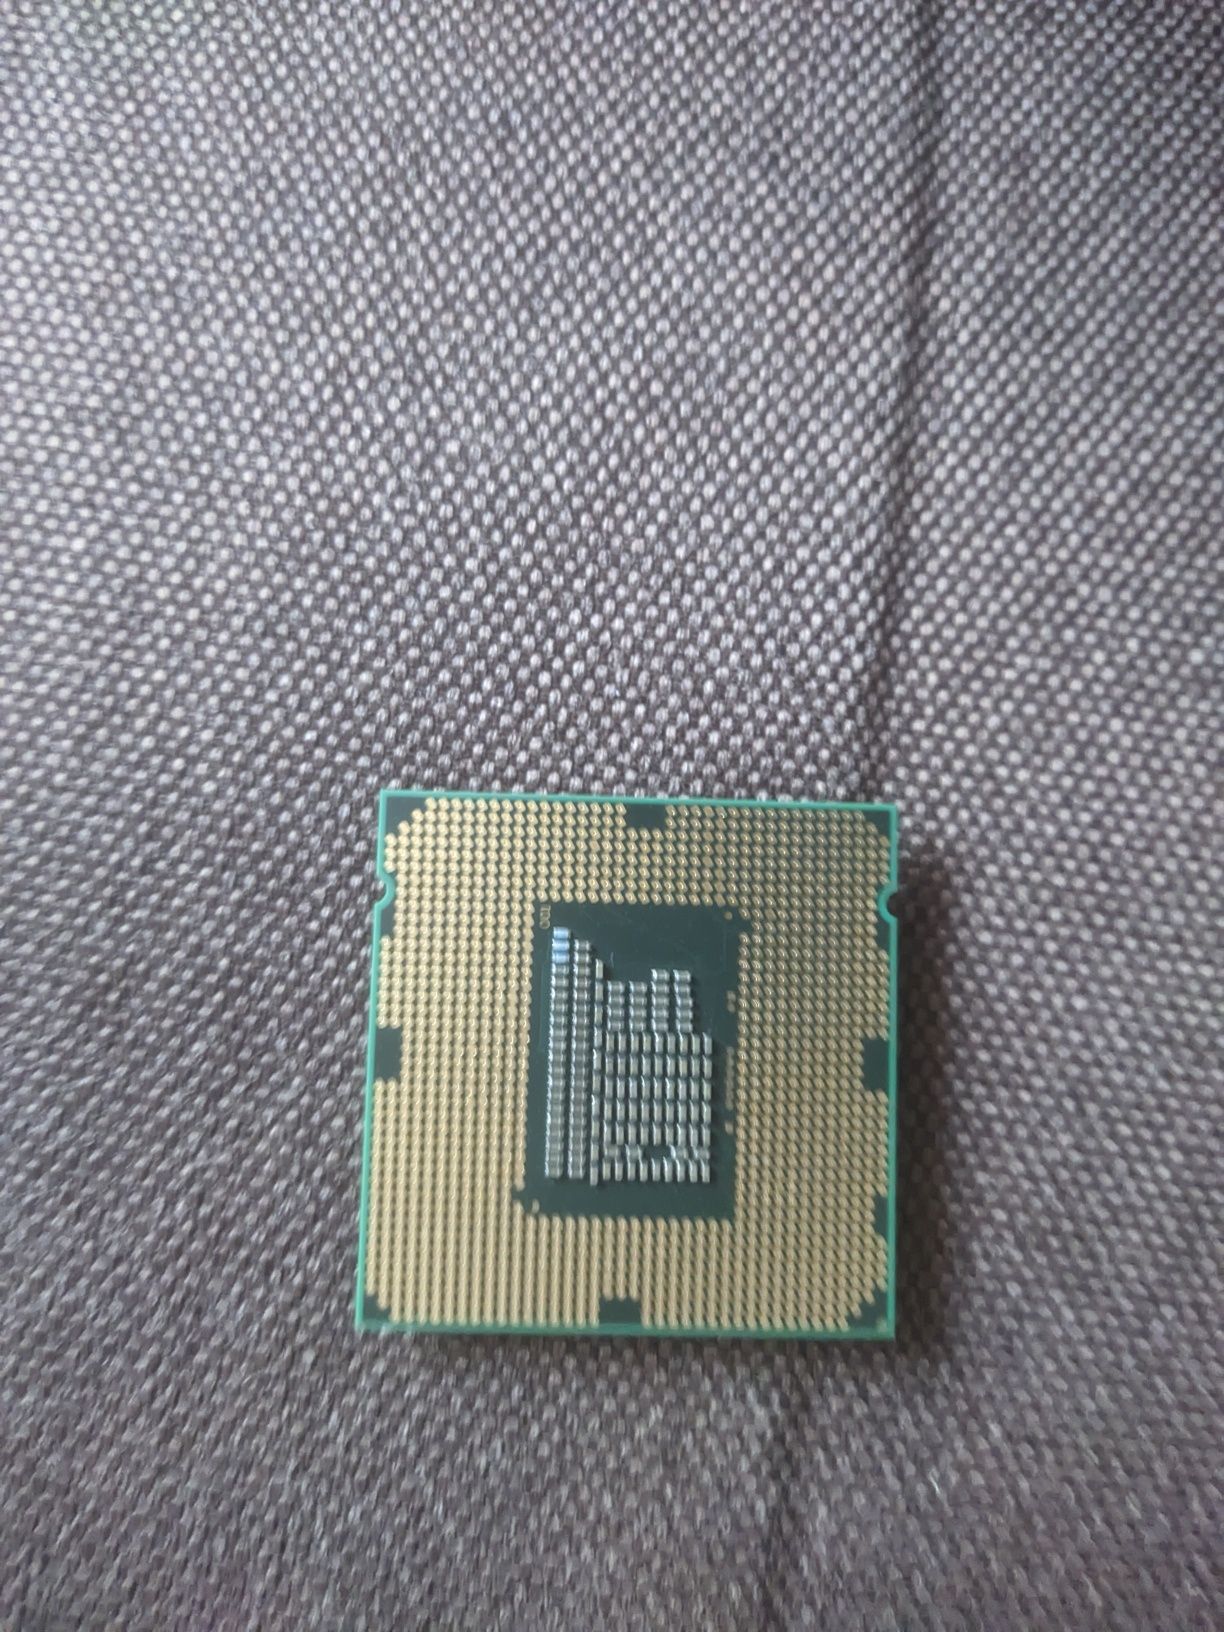 Процесор Intel core i3-2100 в ідеальному стані